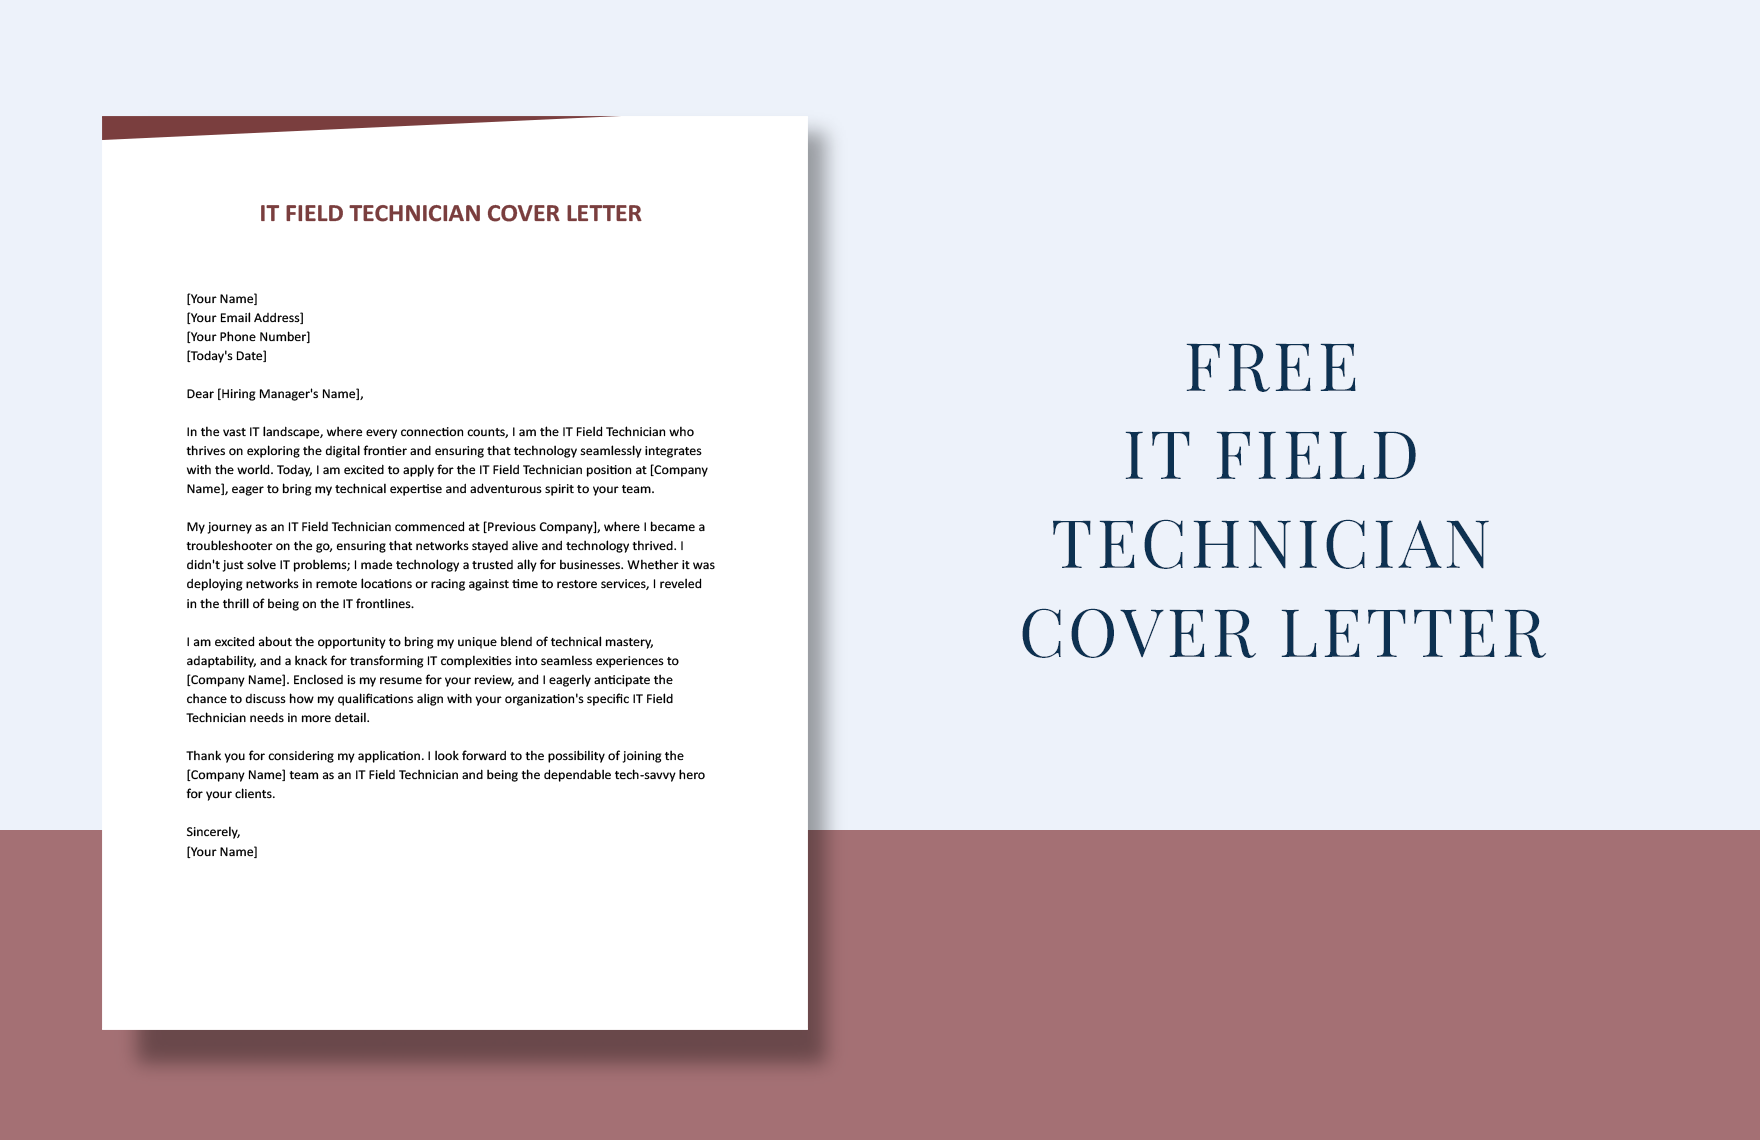 IT Field Technician Cover Letter in Word, Google Docs